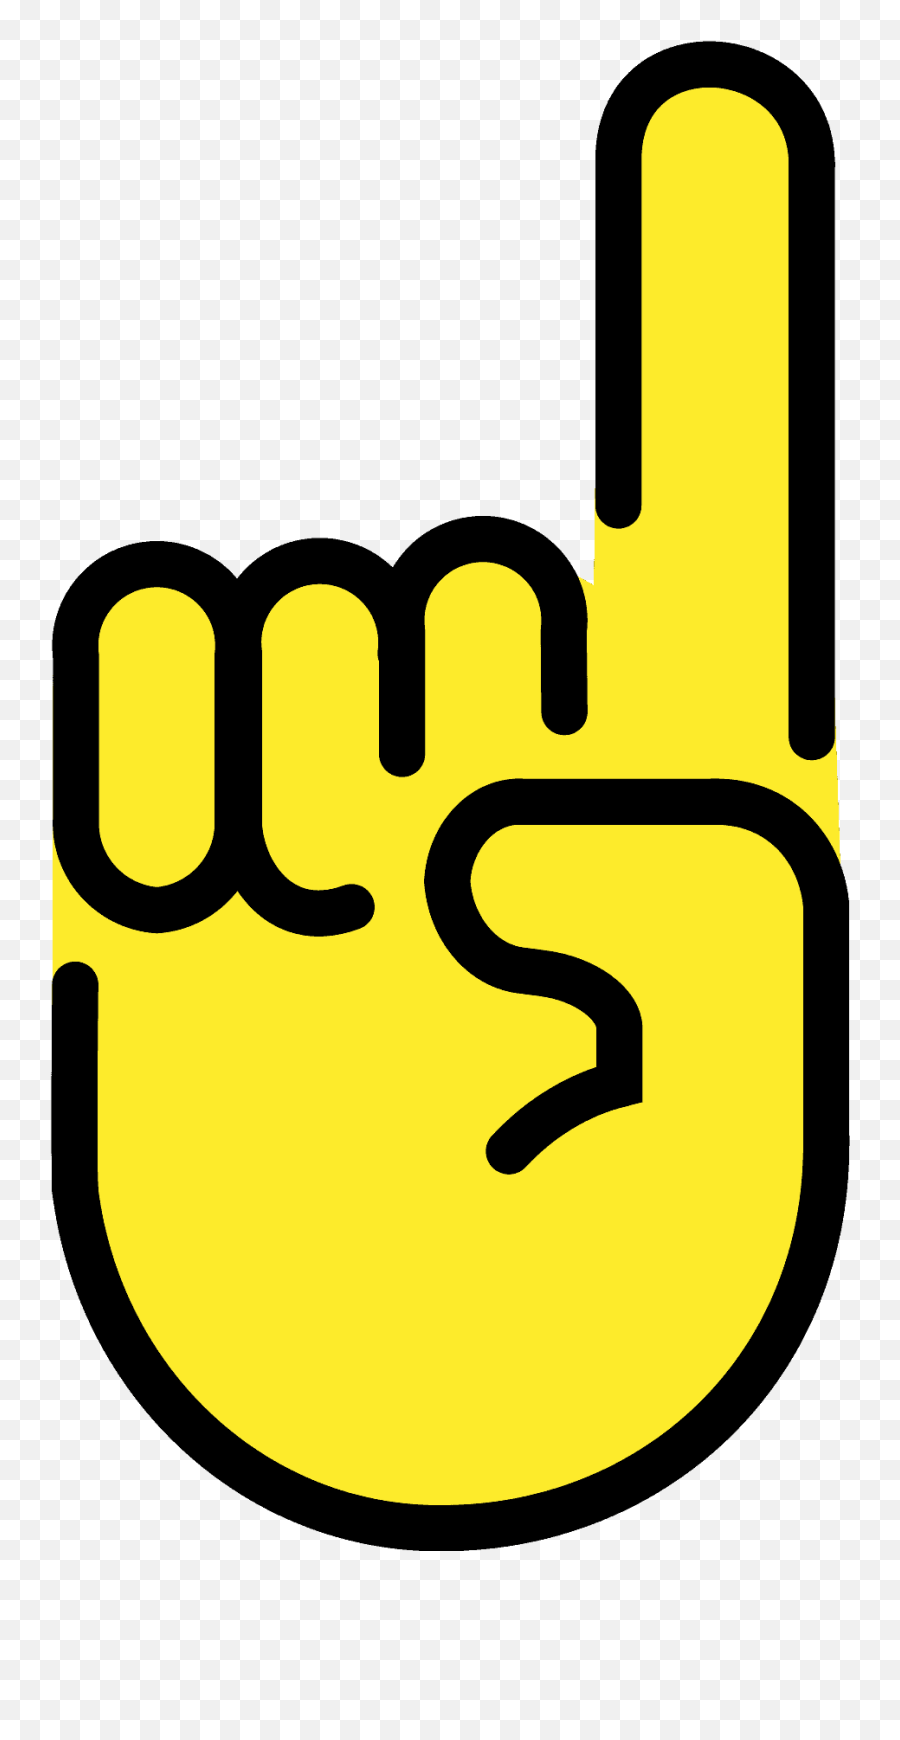 Index Pointing Up Emoji Clipart Free Download Transparent,Finger Up Emoji